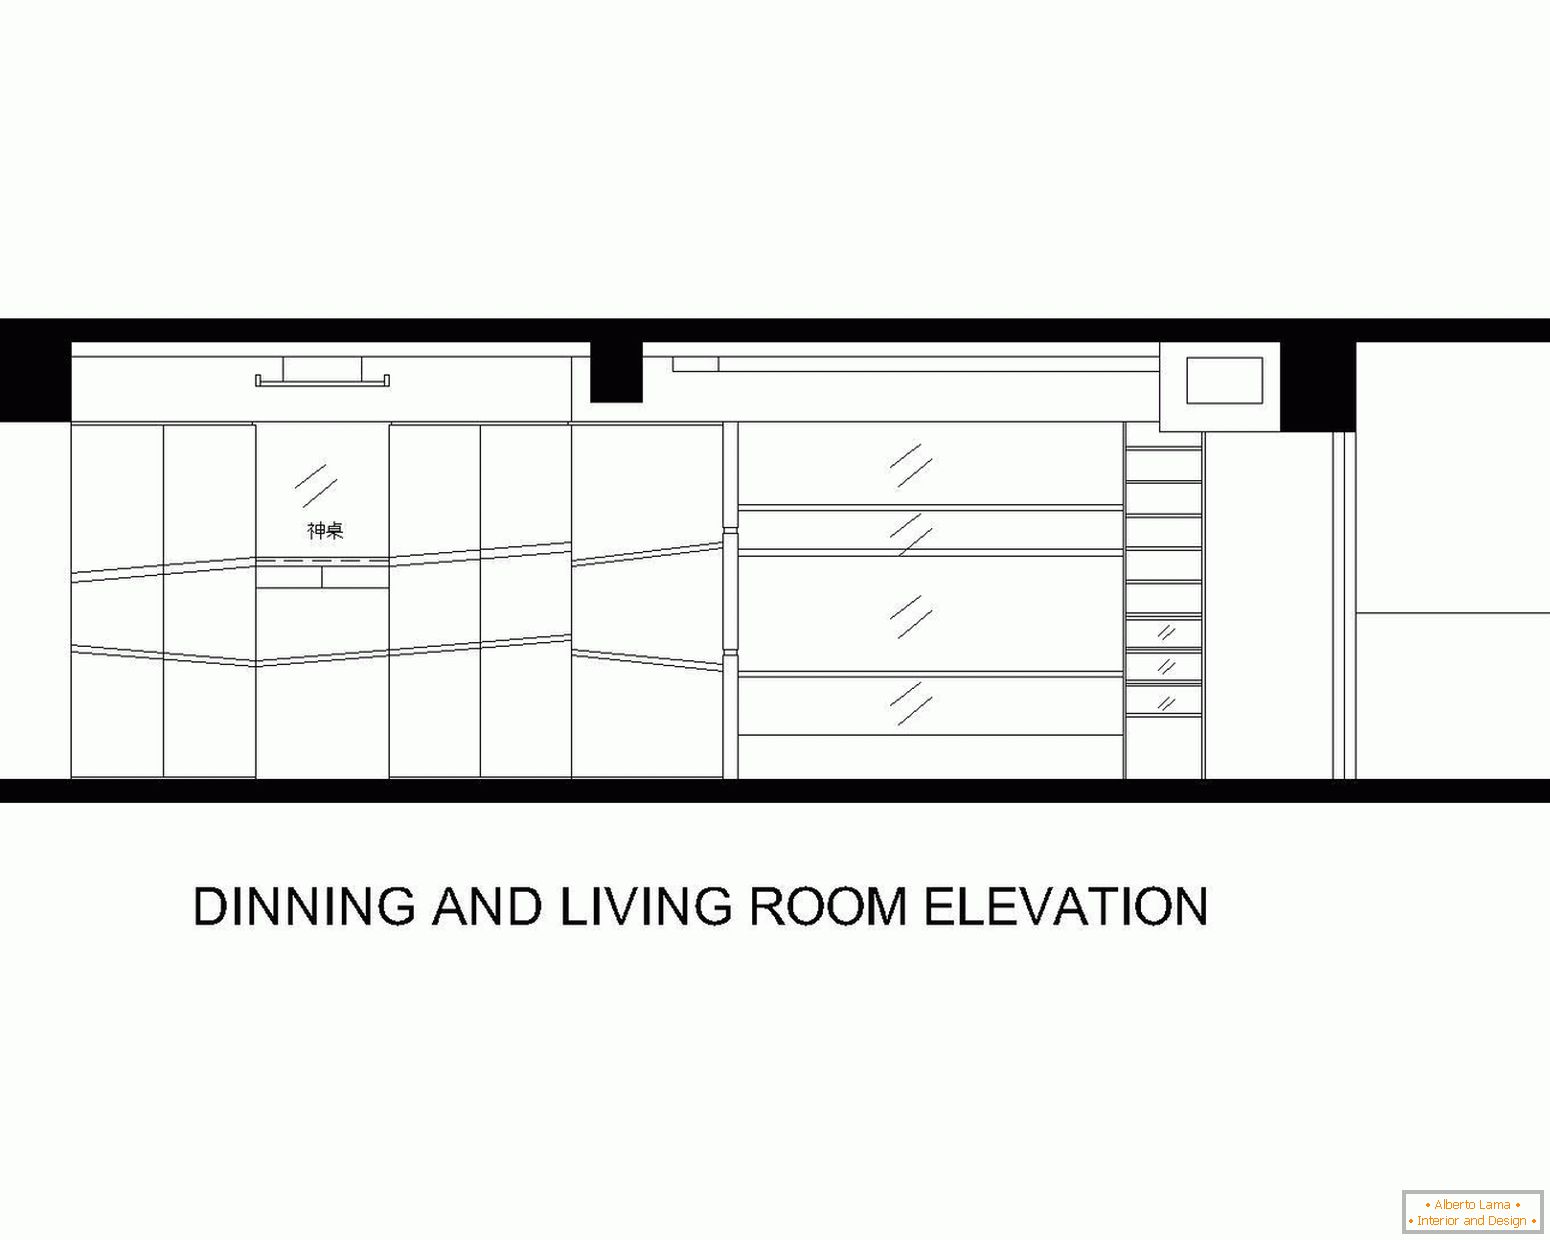 Plan von Esszimmer und Wohnzimmer